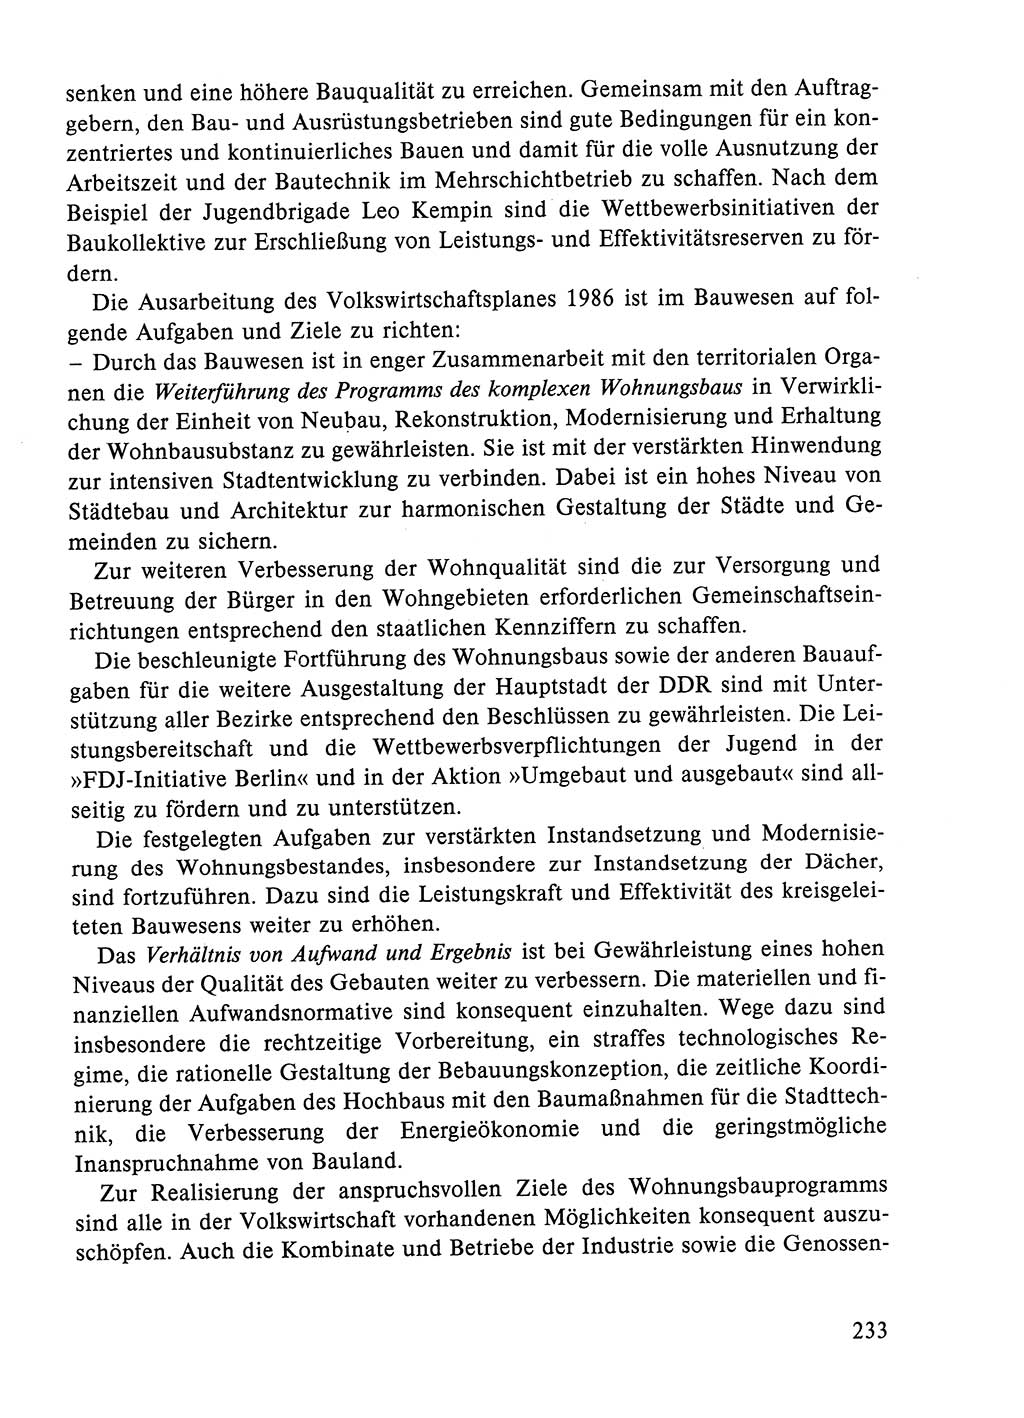 Dokumente der Sozialistischen Einheitspartei Deutschlands (SED) [Deutsche Demokratische Republik (DDR)] 1984-1985, Seite 194 (Dok. SED DDR 1984-1985, S. 194)